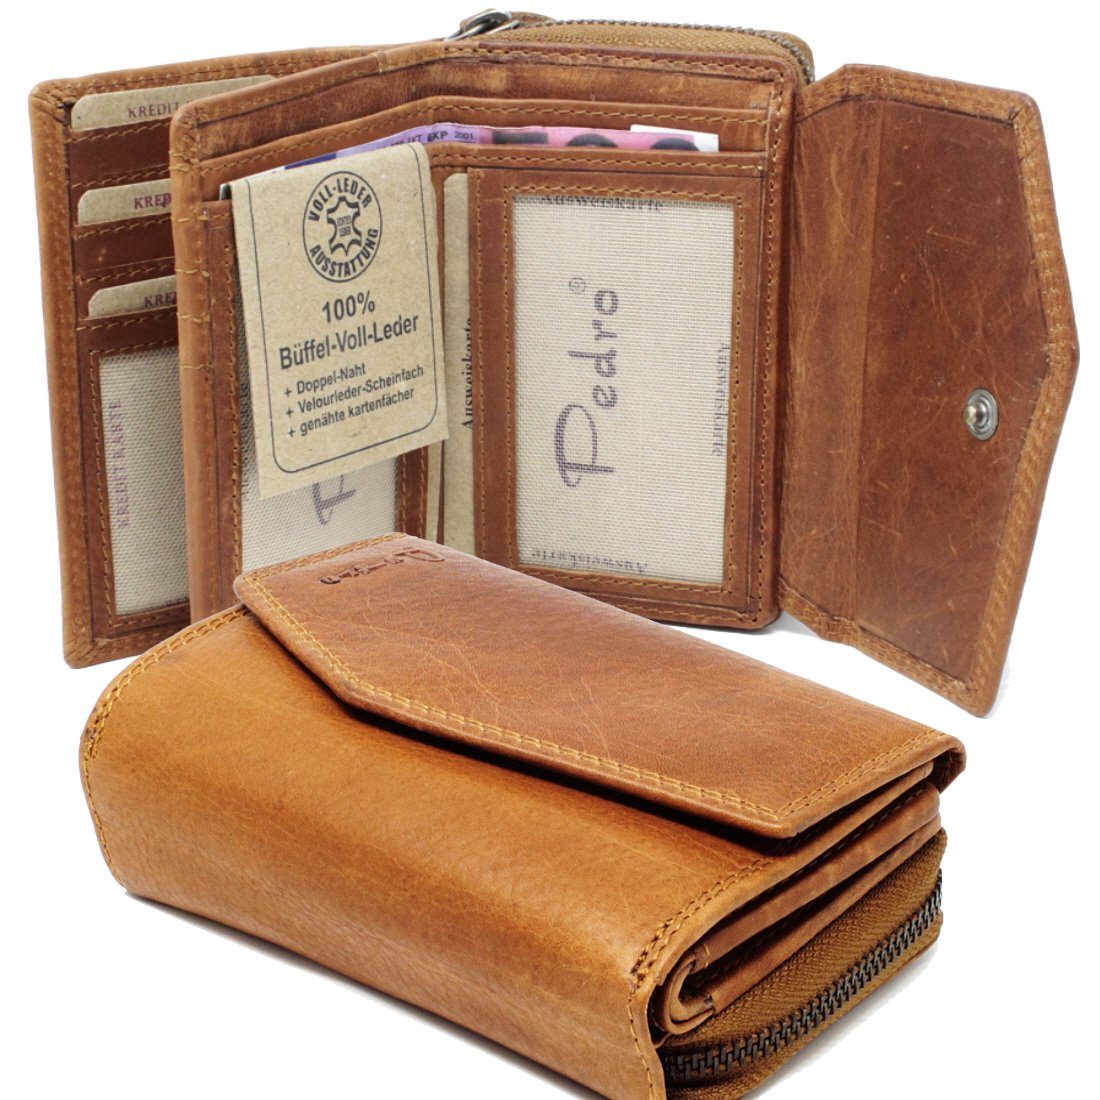 Damen Portemonnaie Brieftasche Lederbörse Geldbörse Geldbeutel aus Leder NEU 